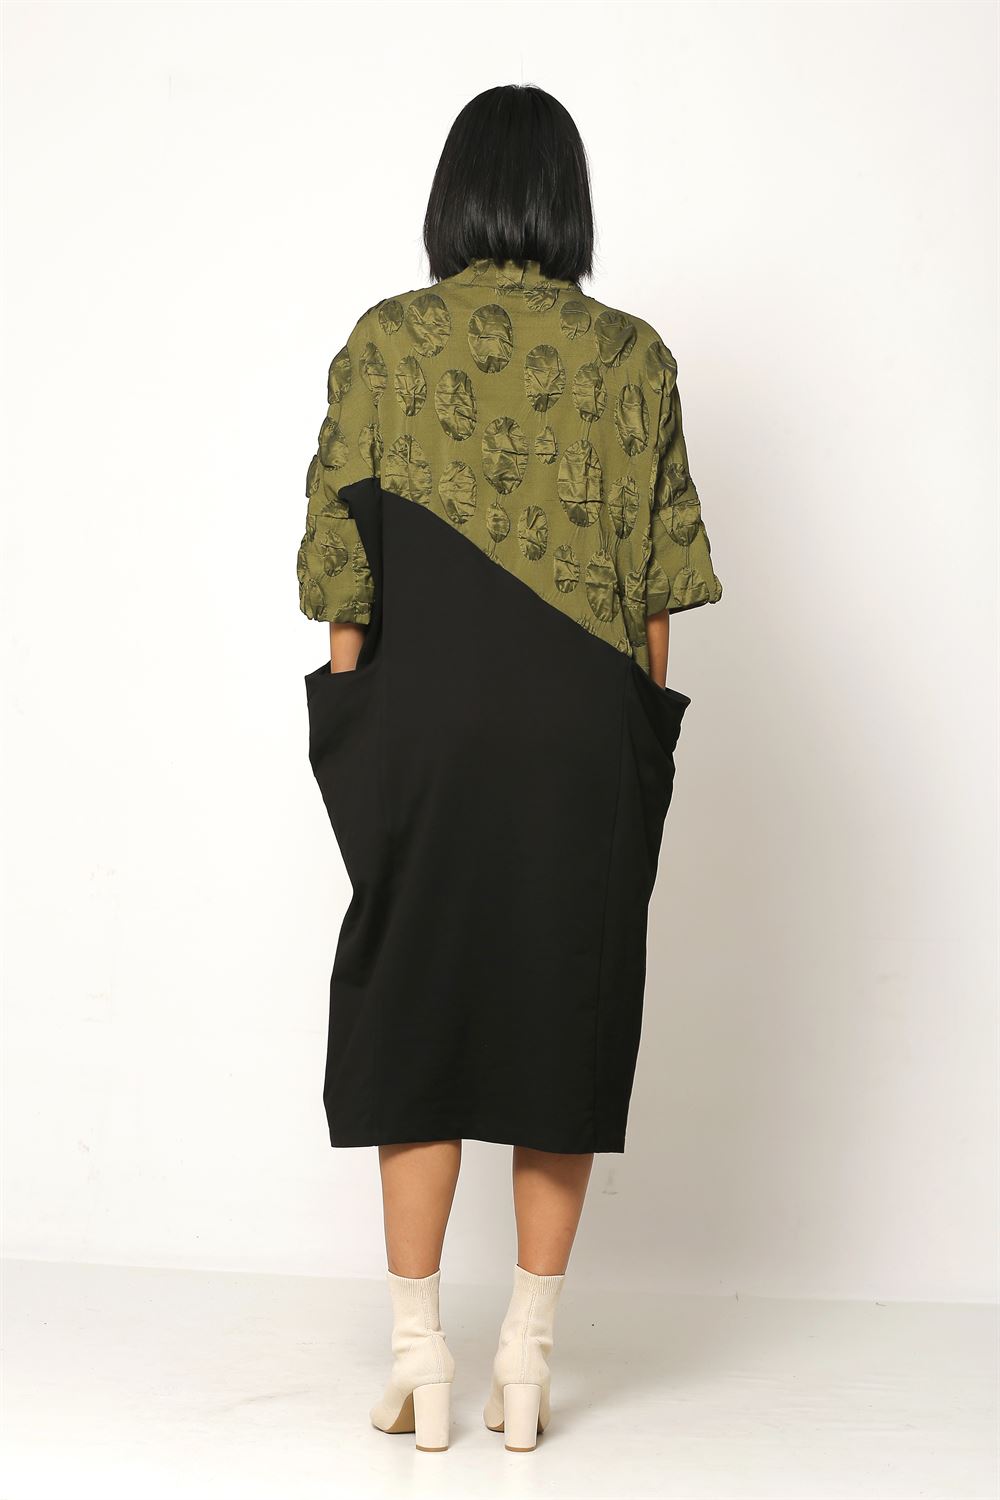 Jacquard Plain Knitted Fabric Dress - Khaki